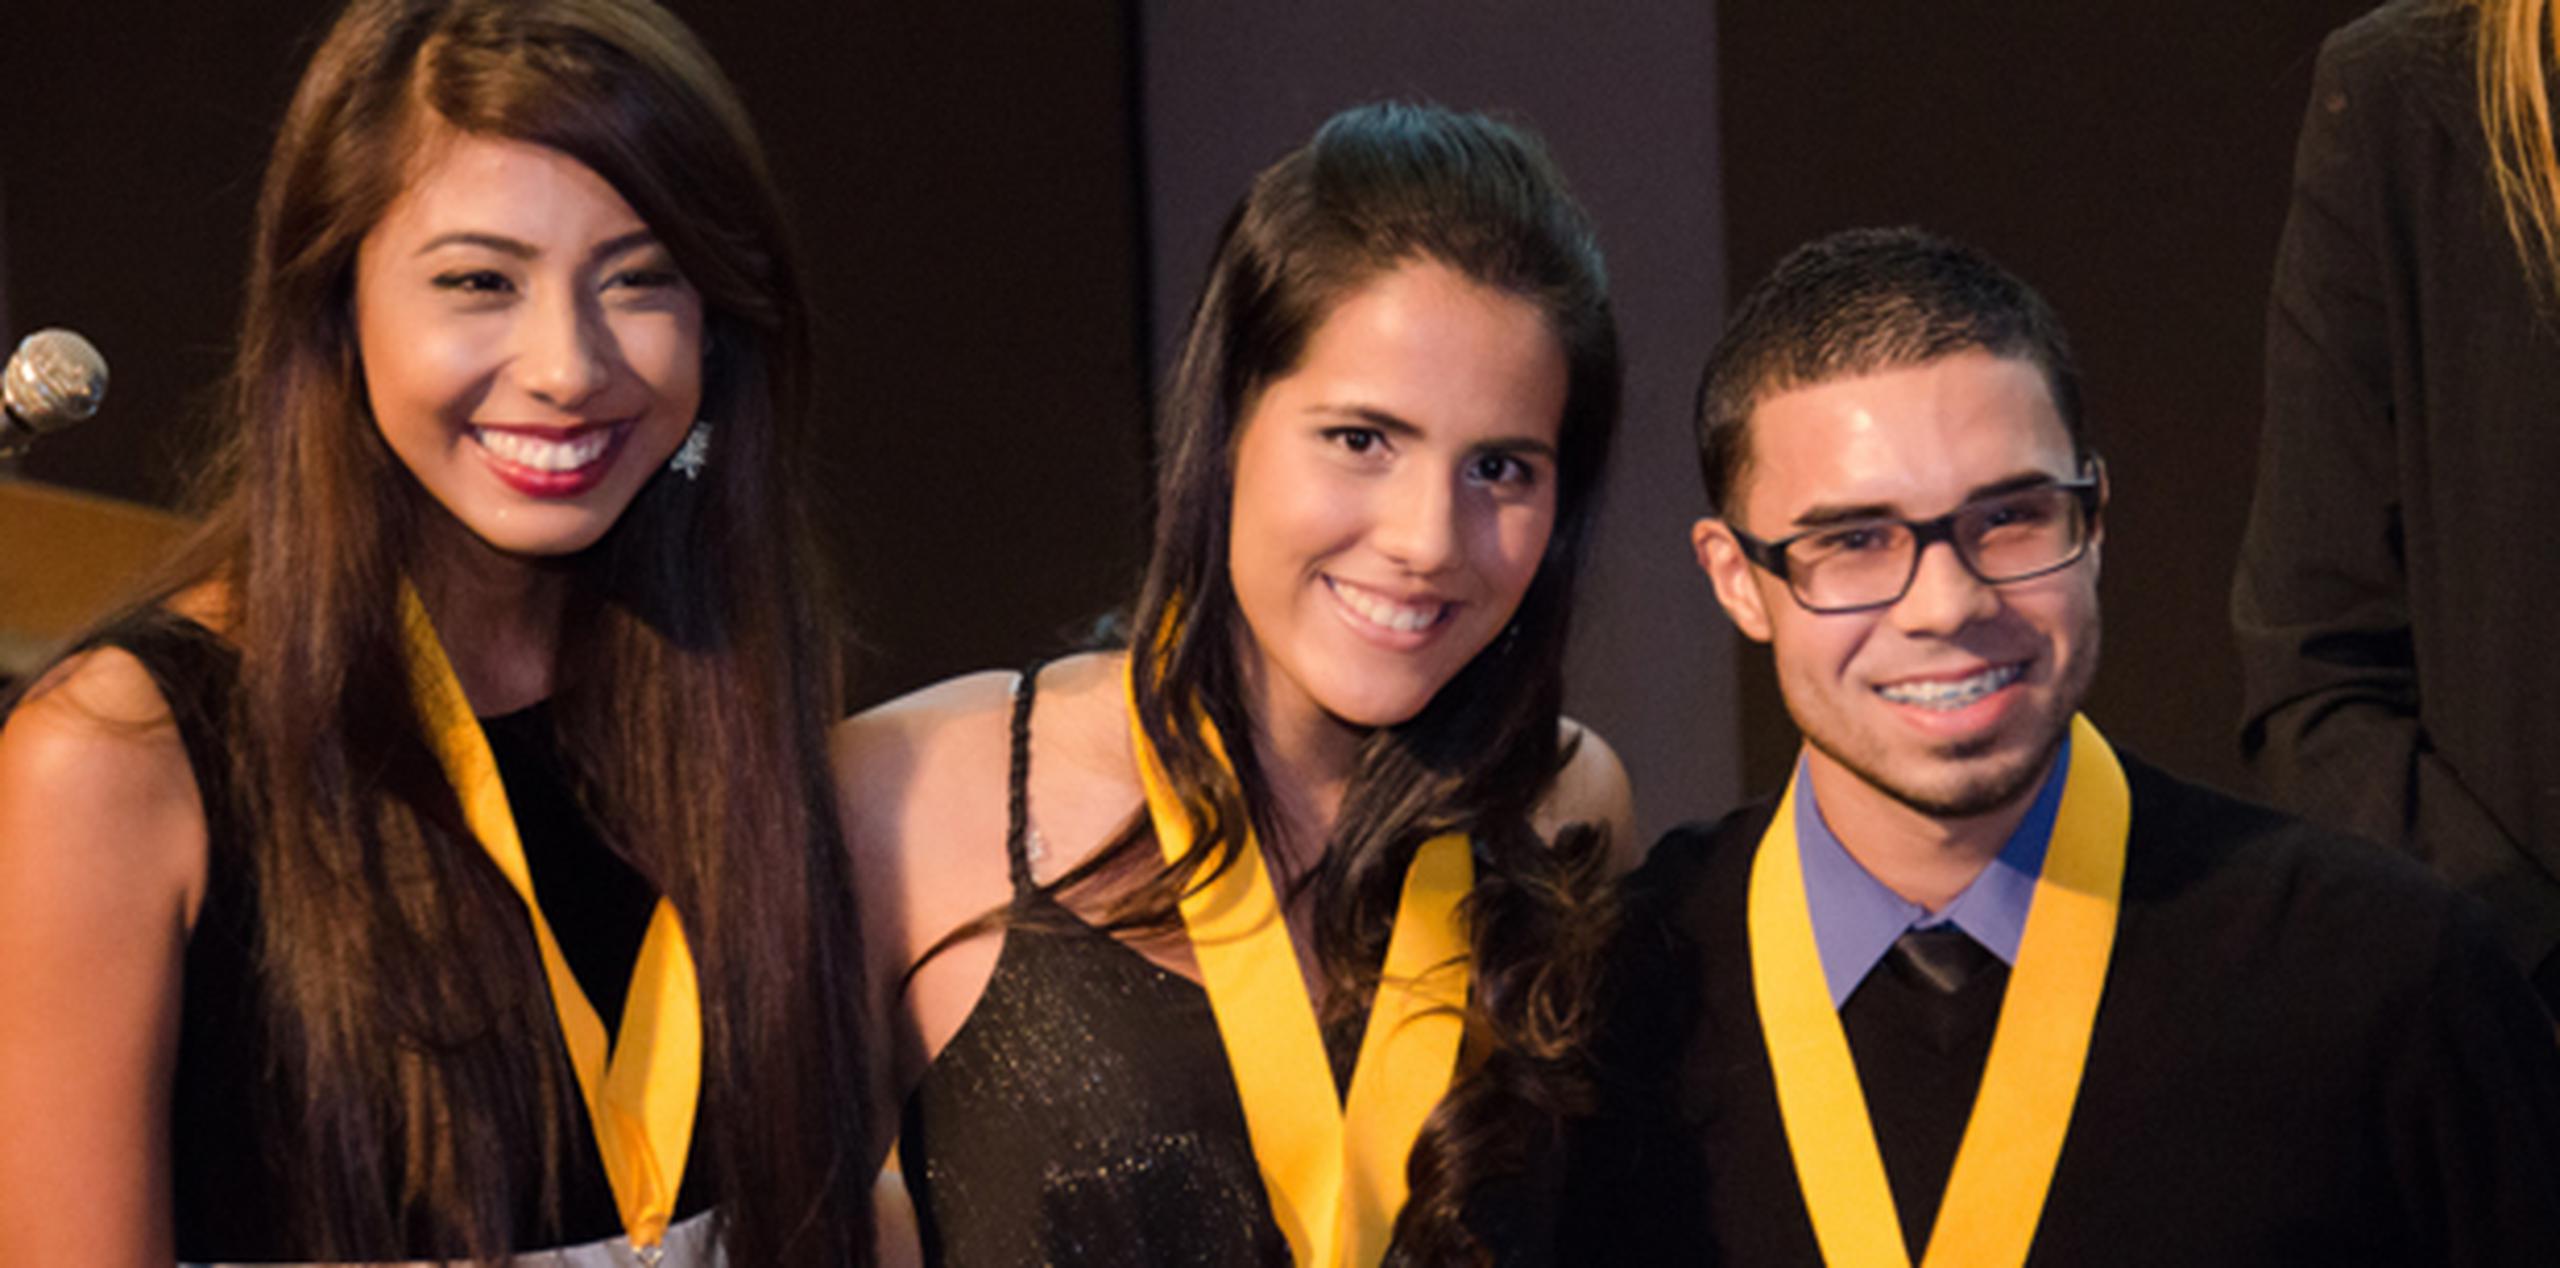 Los jóvenes ganadores fueron Danalisse Claudio, María V. Lau y Ronald A. Ávila, estudiantes de Publicidad Comercial de la Universidad de Puerto Rico en Carolina. (Suministrada)